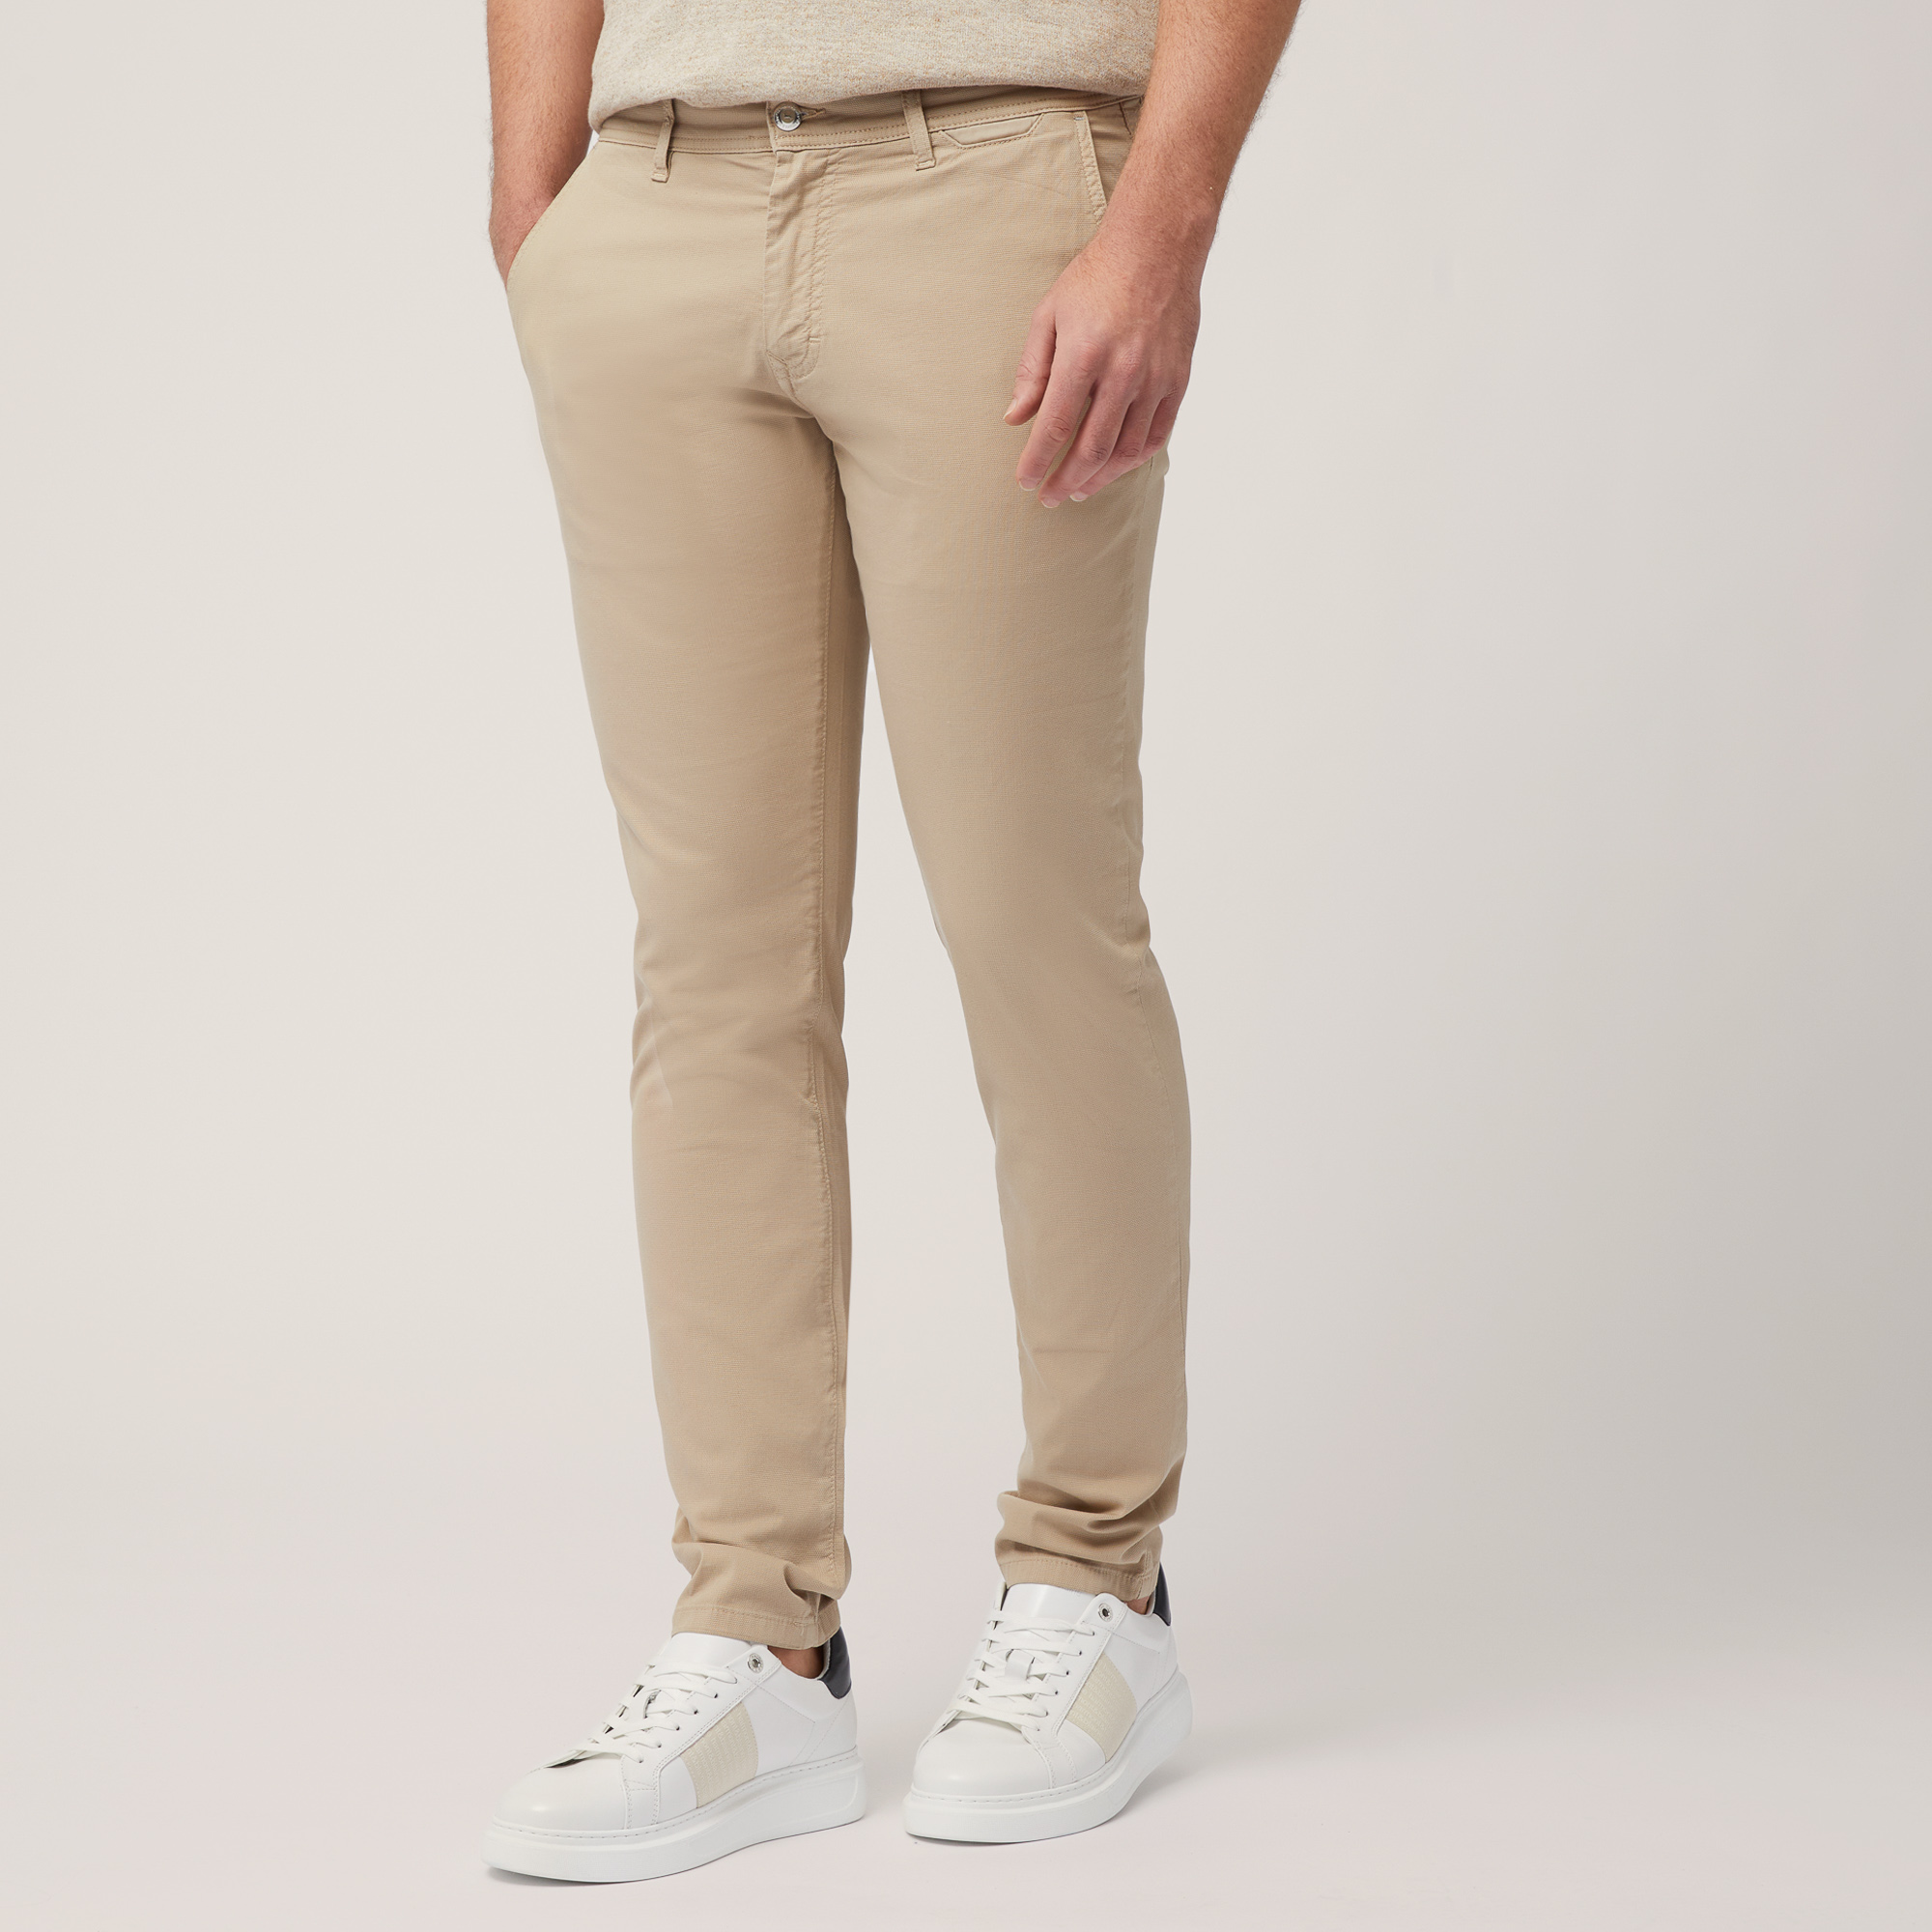 Colorfive Pants, Beige, large